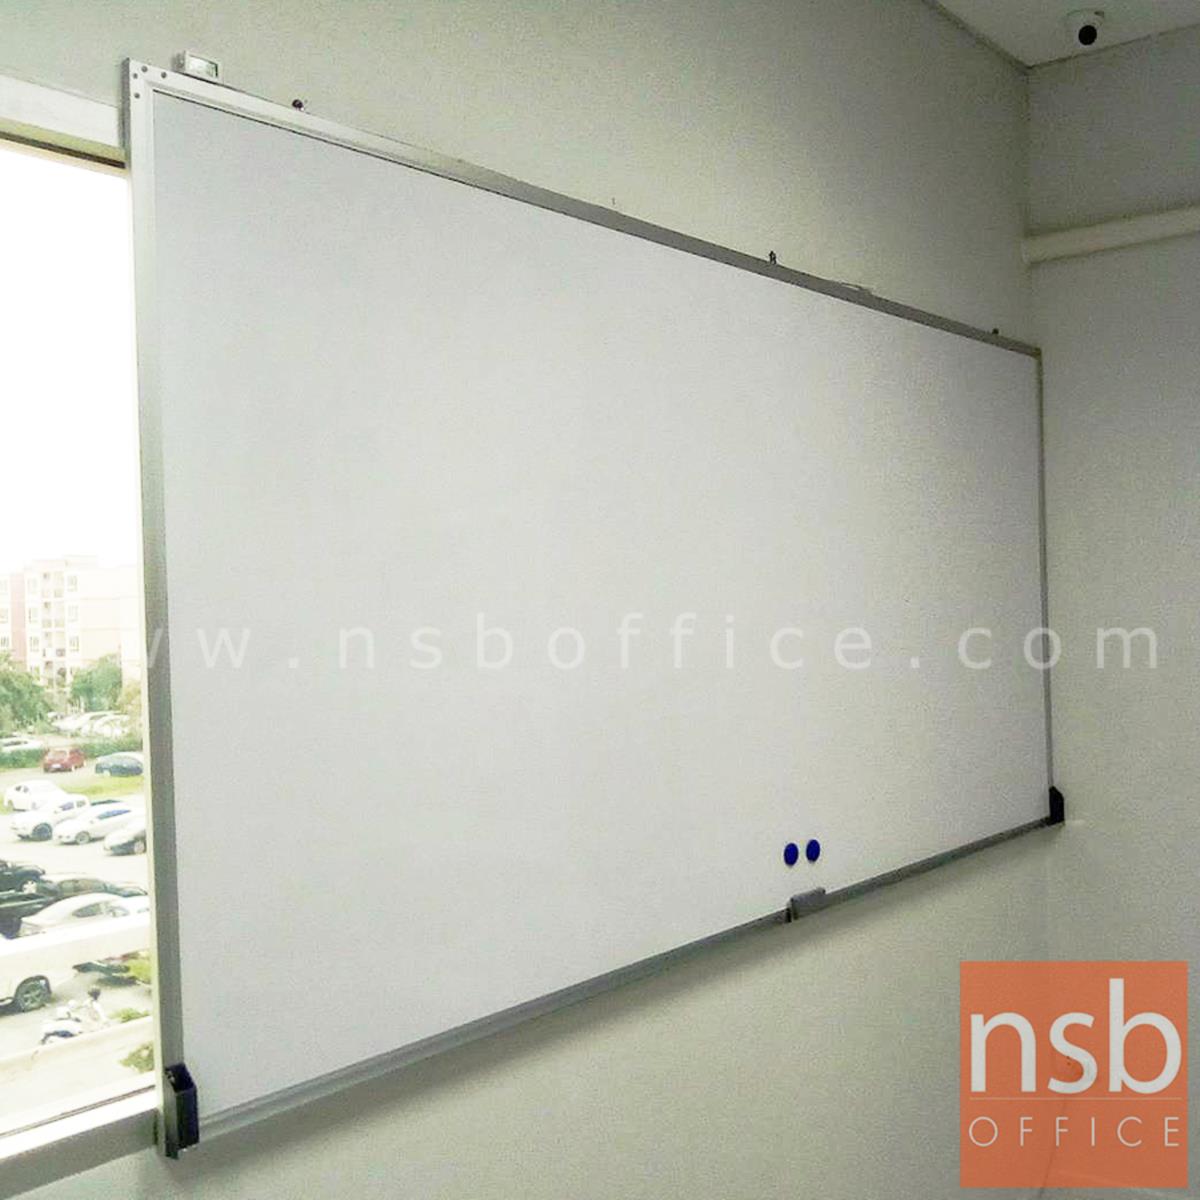 กระดานไวท์บอร์ด White board ขนาดใหญ่   ขอบอลูมิเนียมขนาด  1" * 1/2" นิ้ว (พร้อมงานติดตั้งบนผนัง)